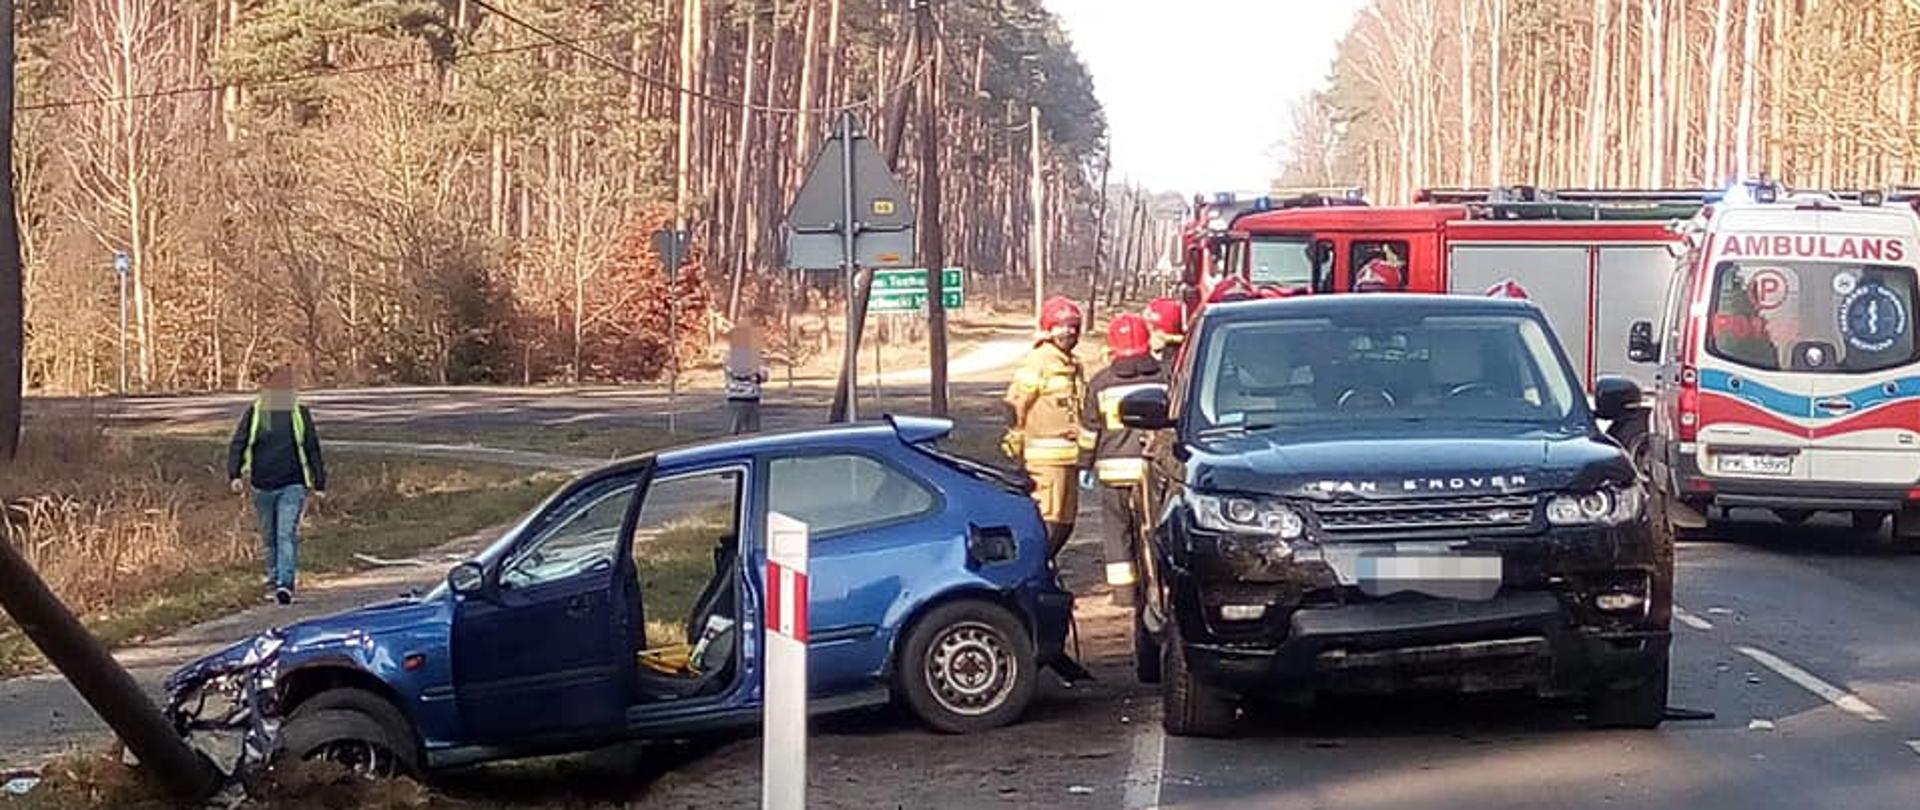 Dwa rozbite samochody, jeden w rowie, z tyłu strażacy, po prawej wóz strażacki i karetka pogotowia.